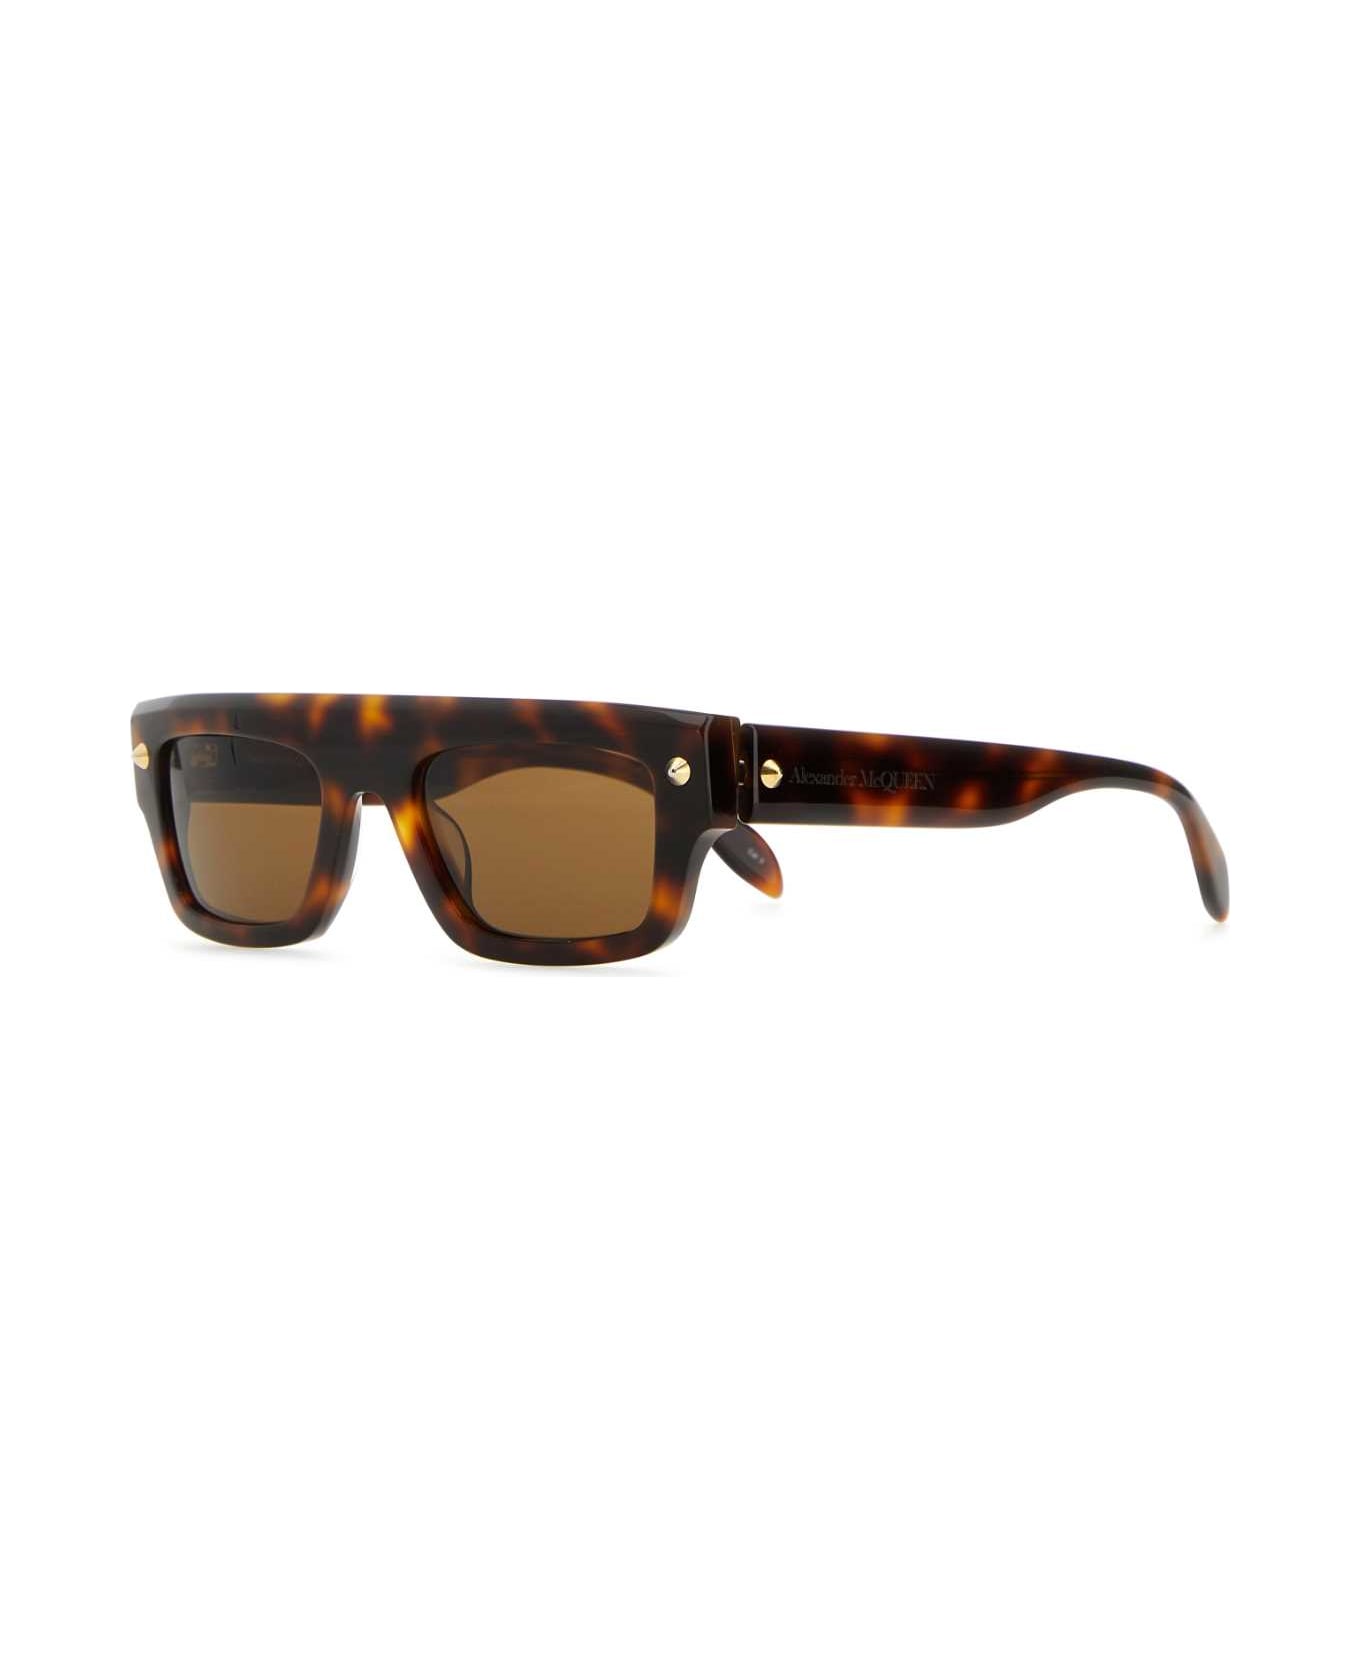 Alexander McQueen Multicolor Acetate Sunglasses - HAVANAHAVANABROWN サングラス